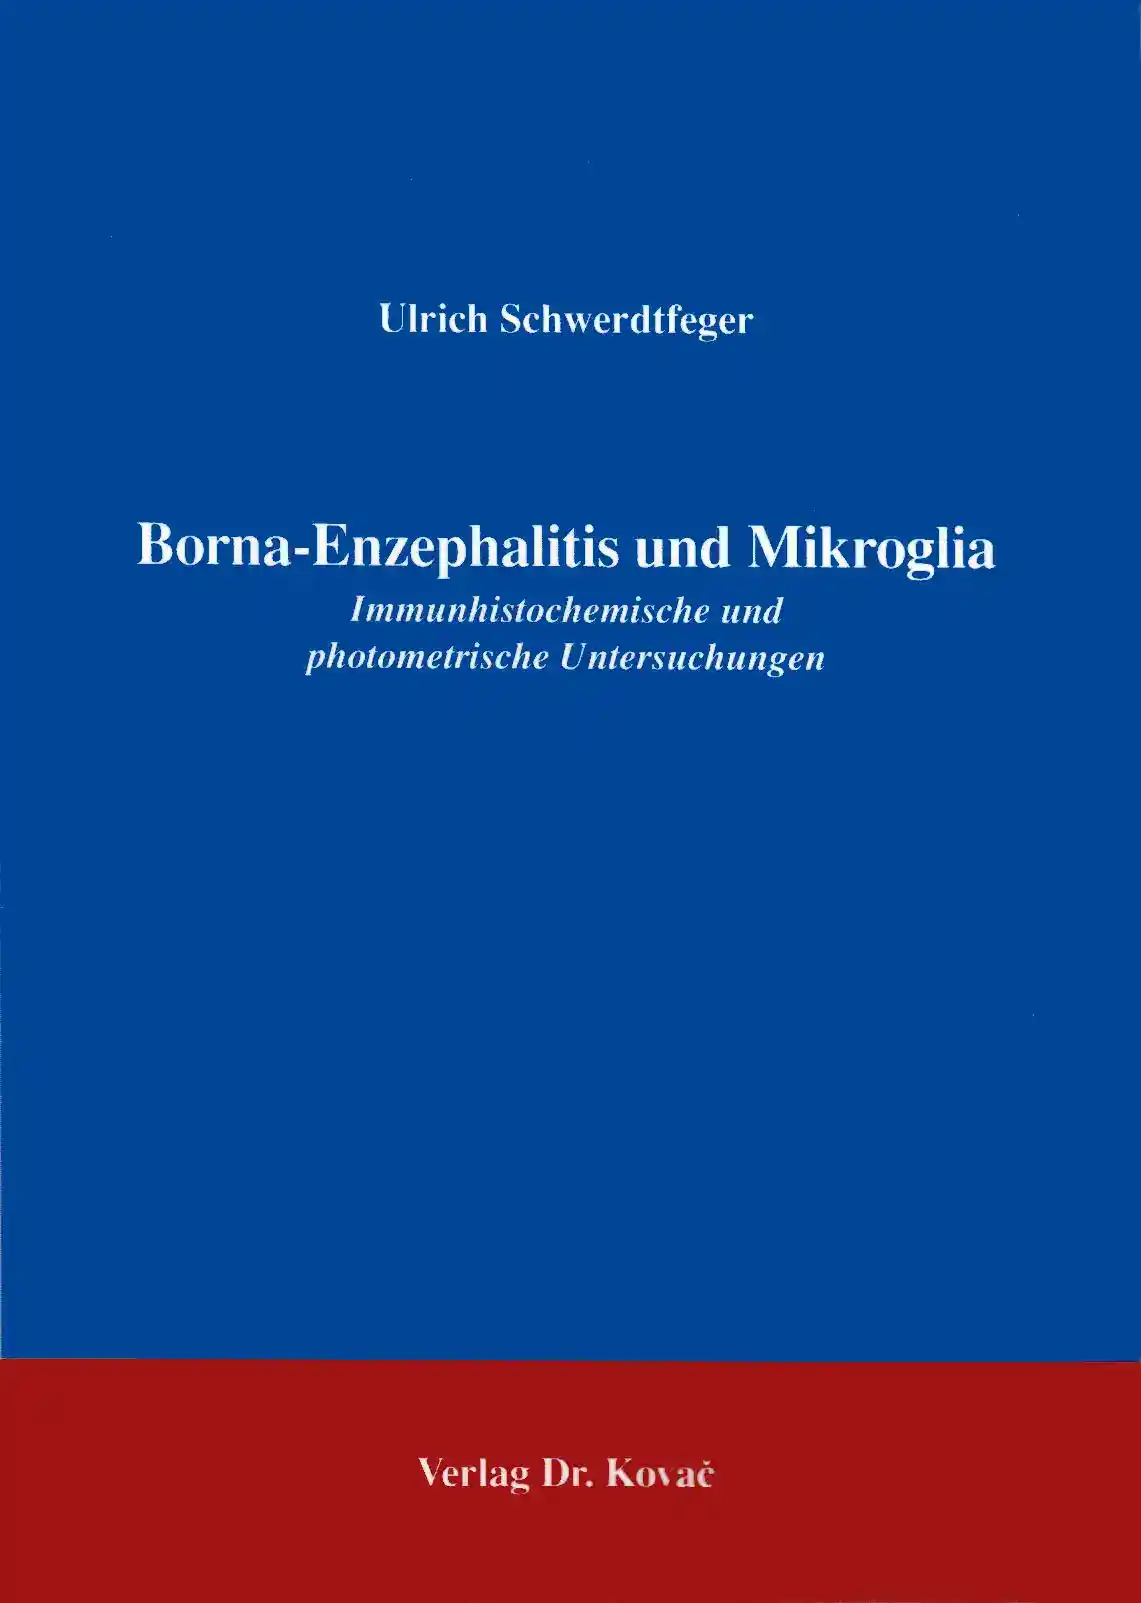  Forschungsarbeit: BornaEnzephalitis und Mikroglia